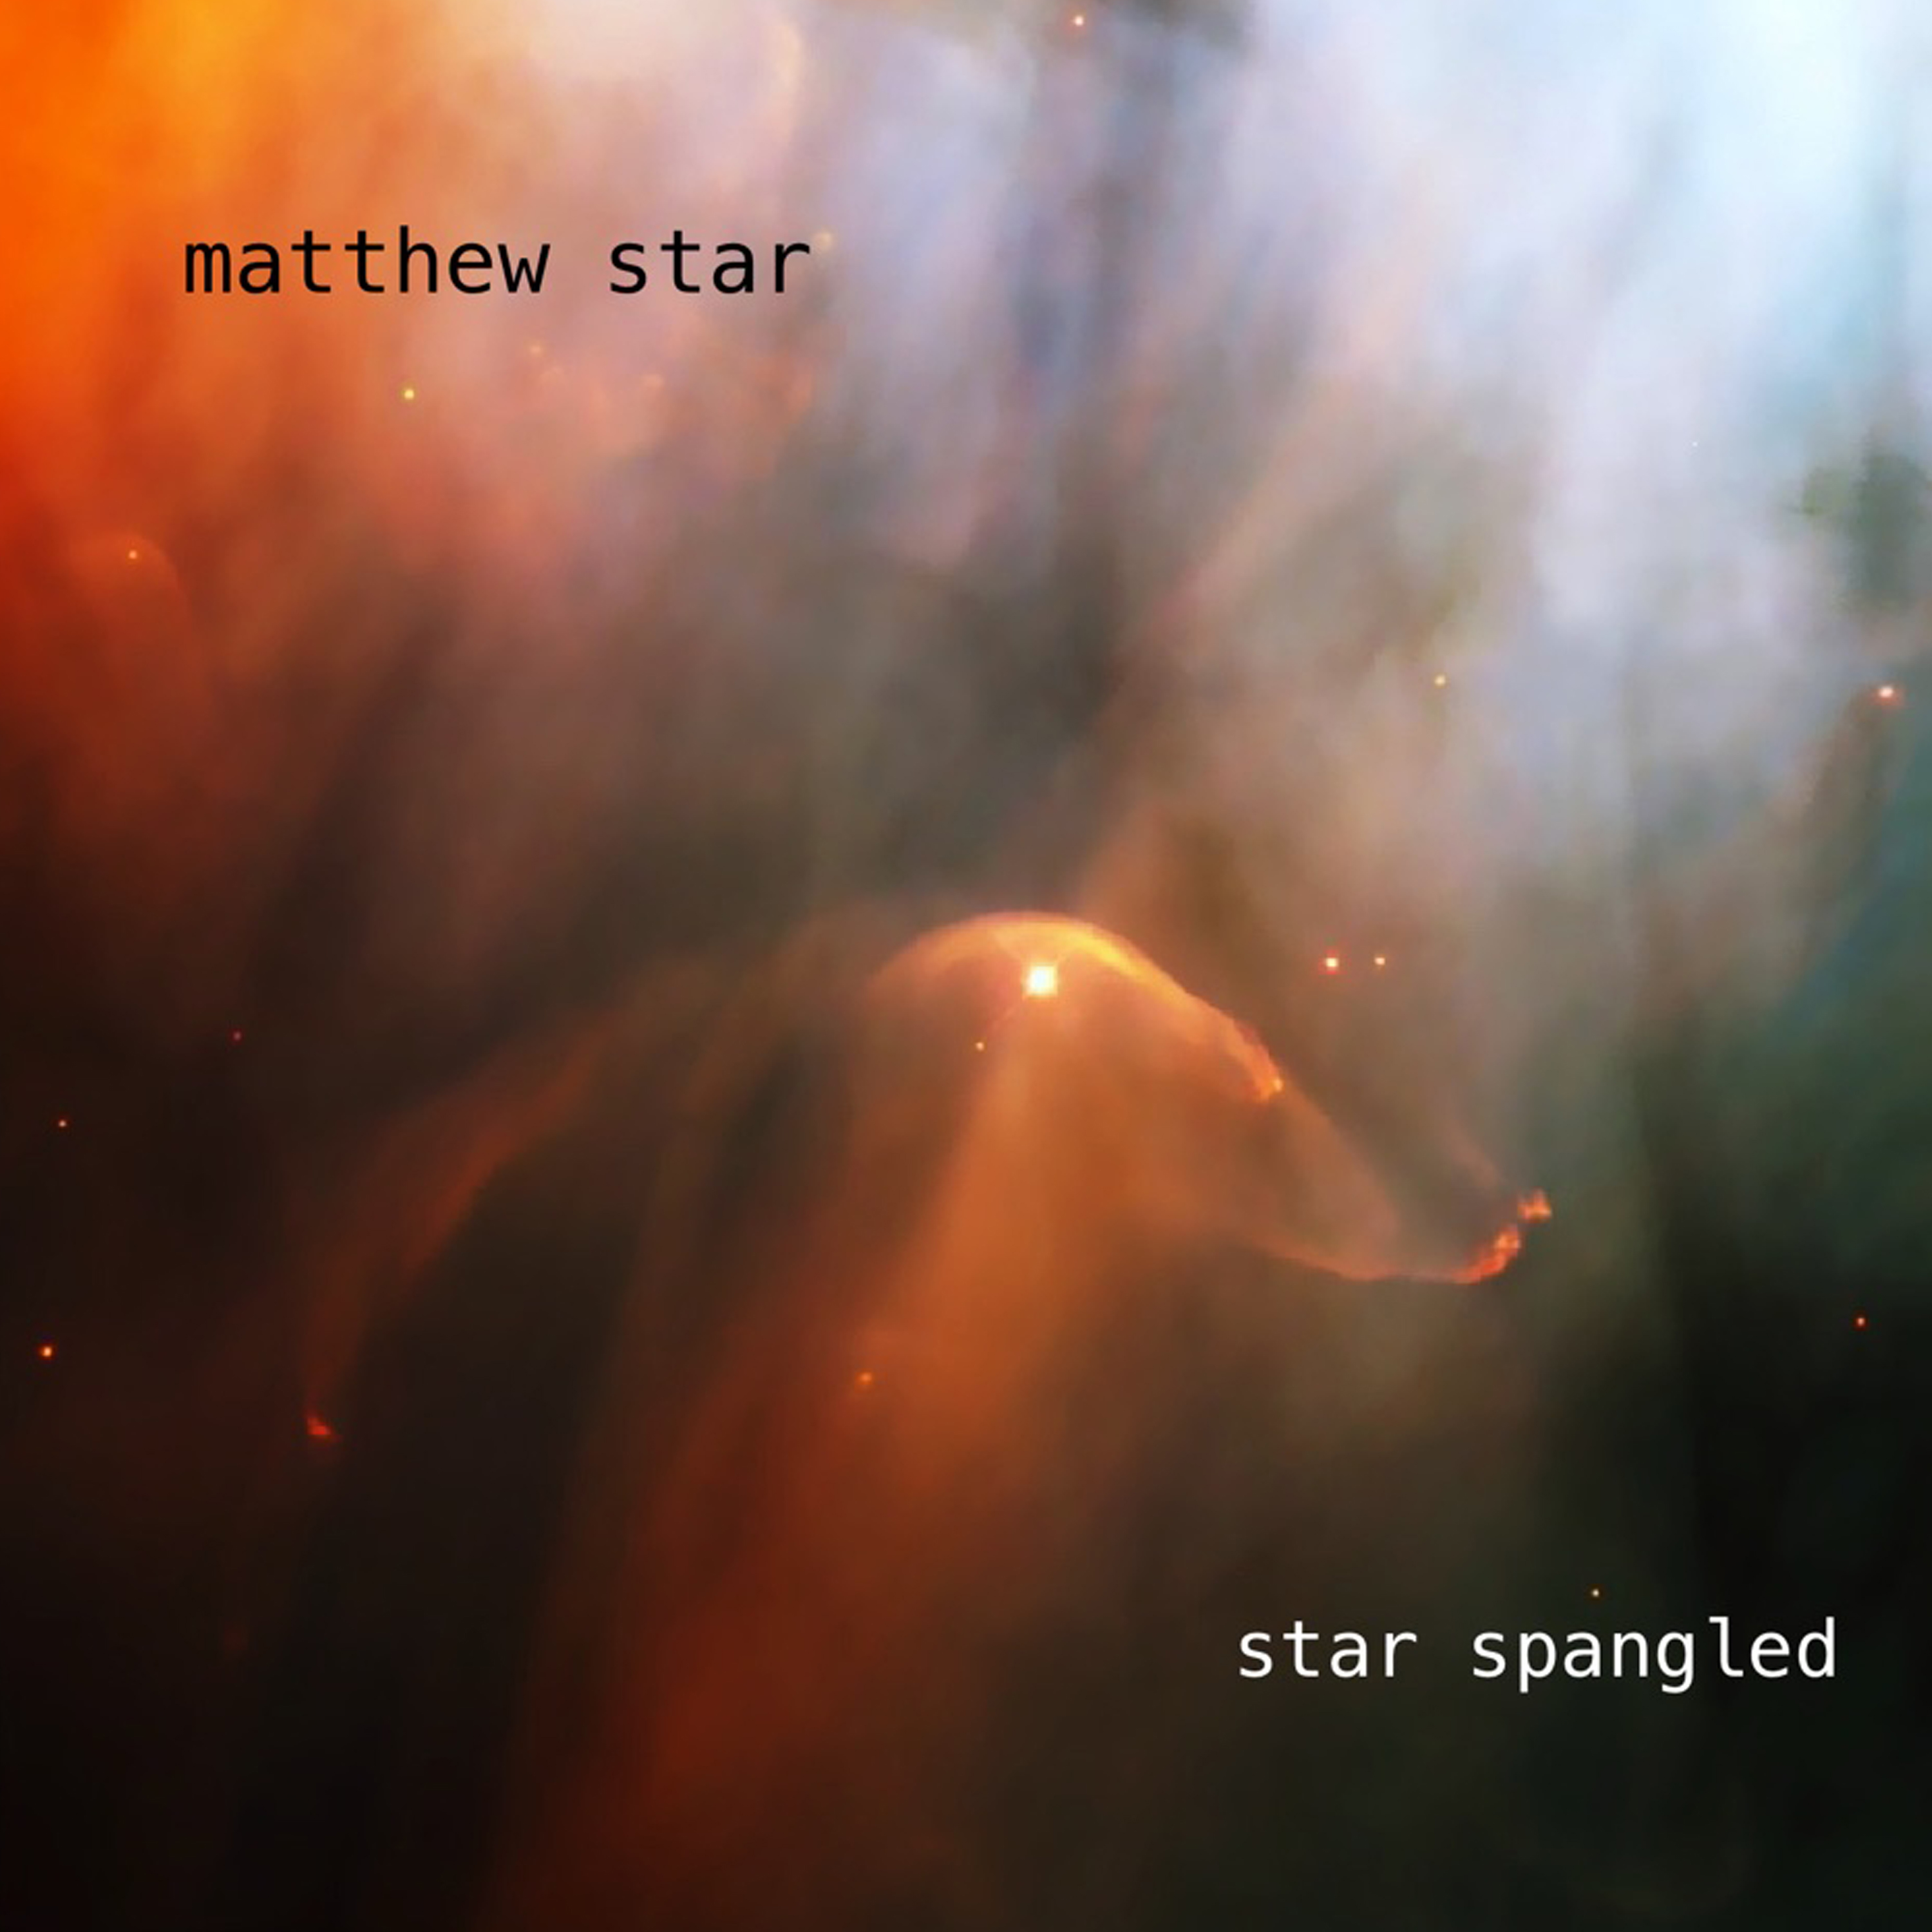 starspangled